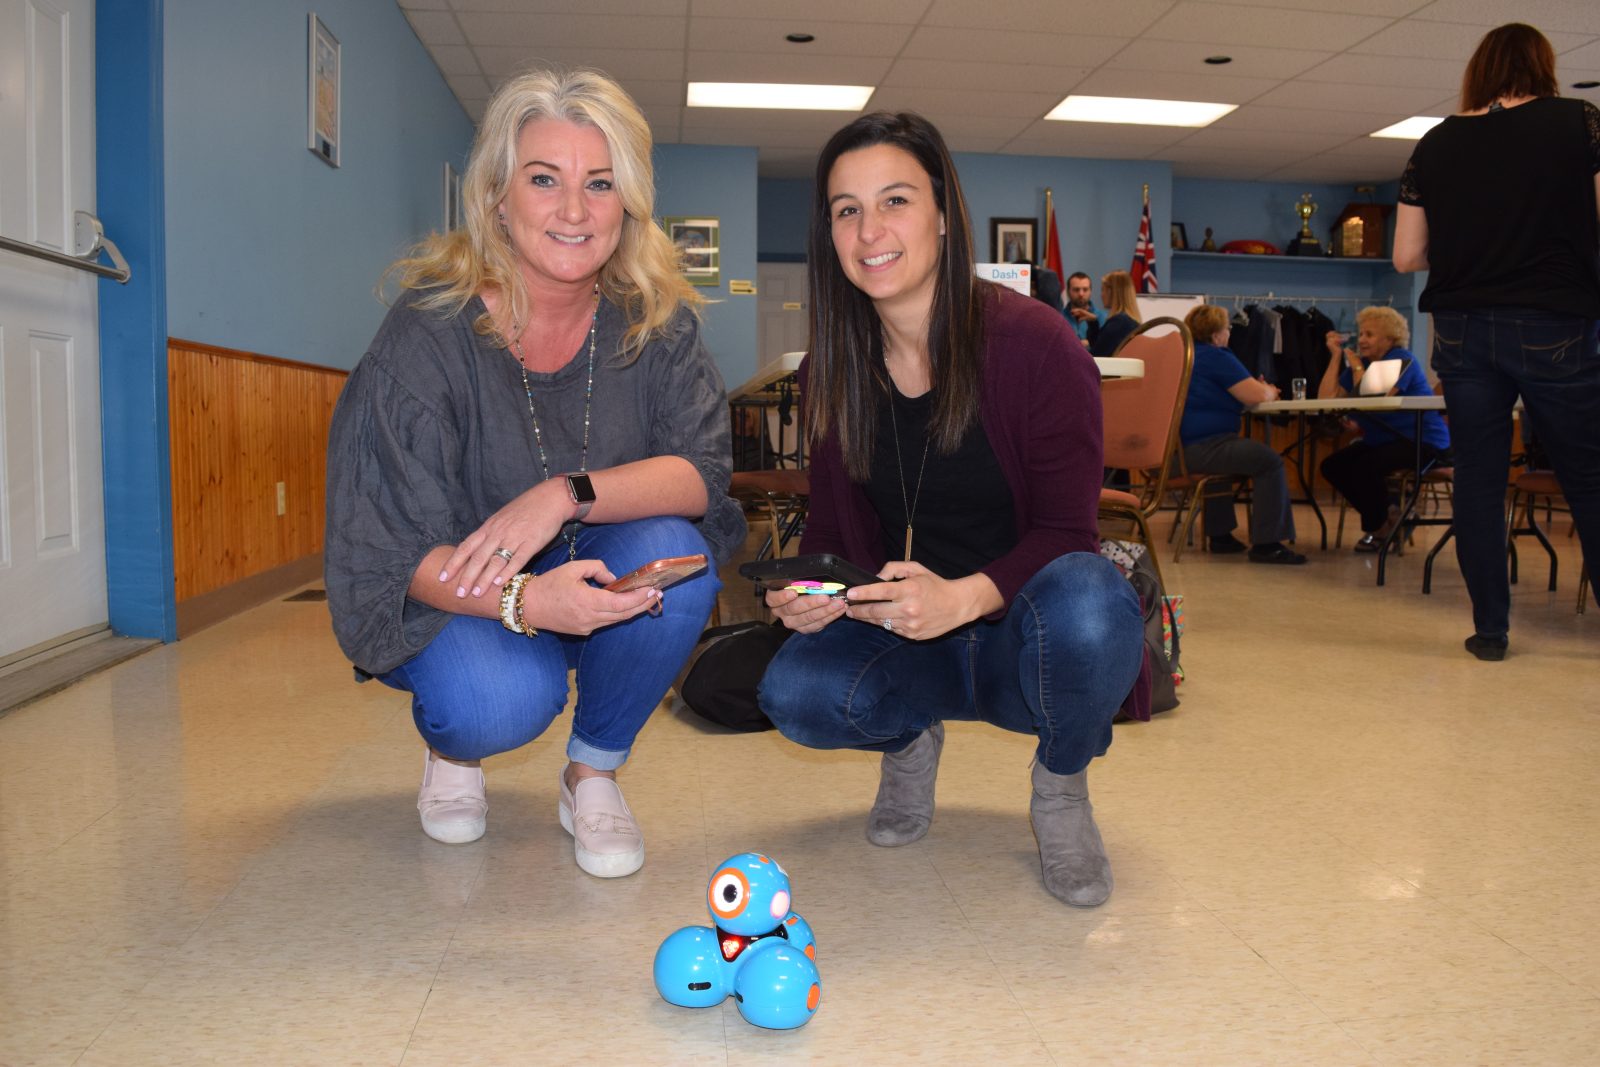 Optimist Club helps teachers learn with robots